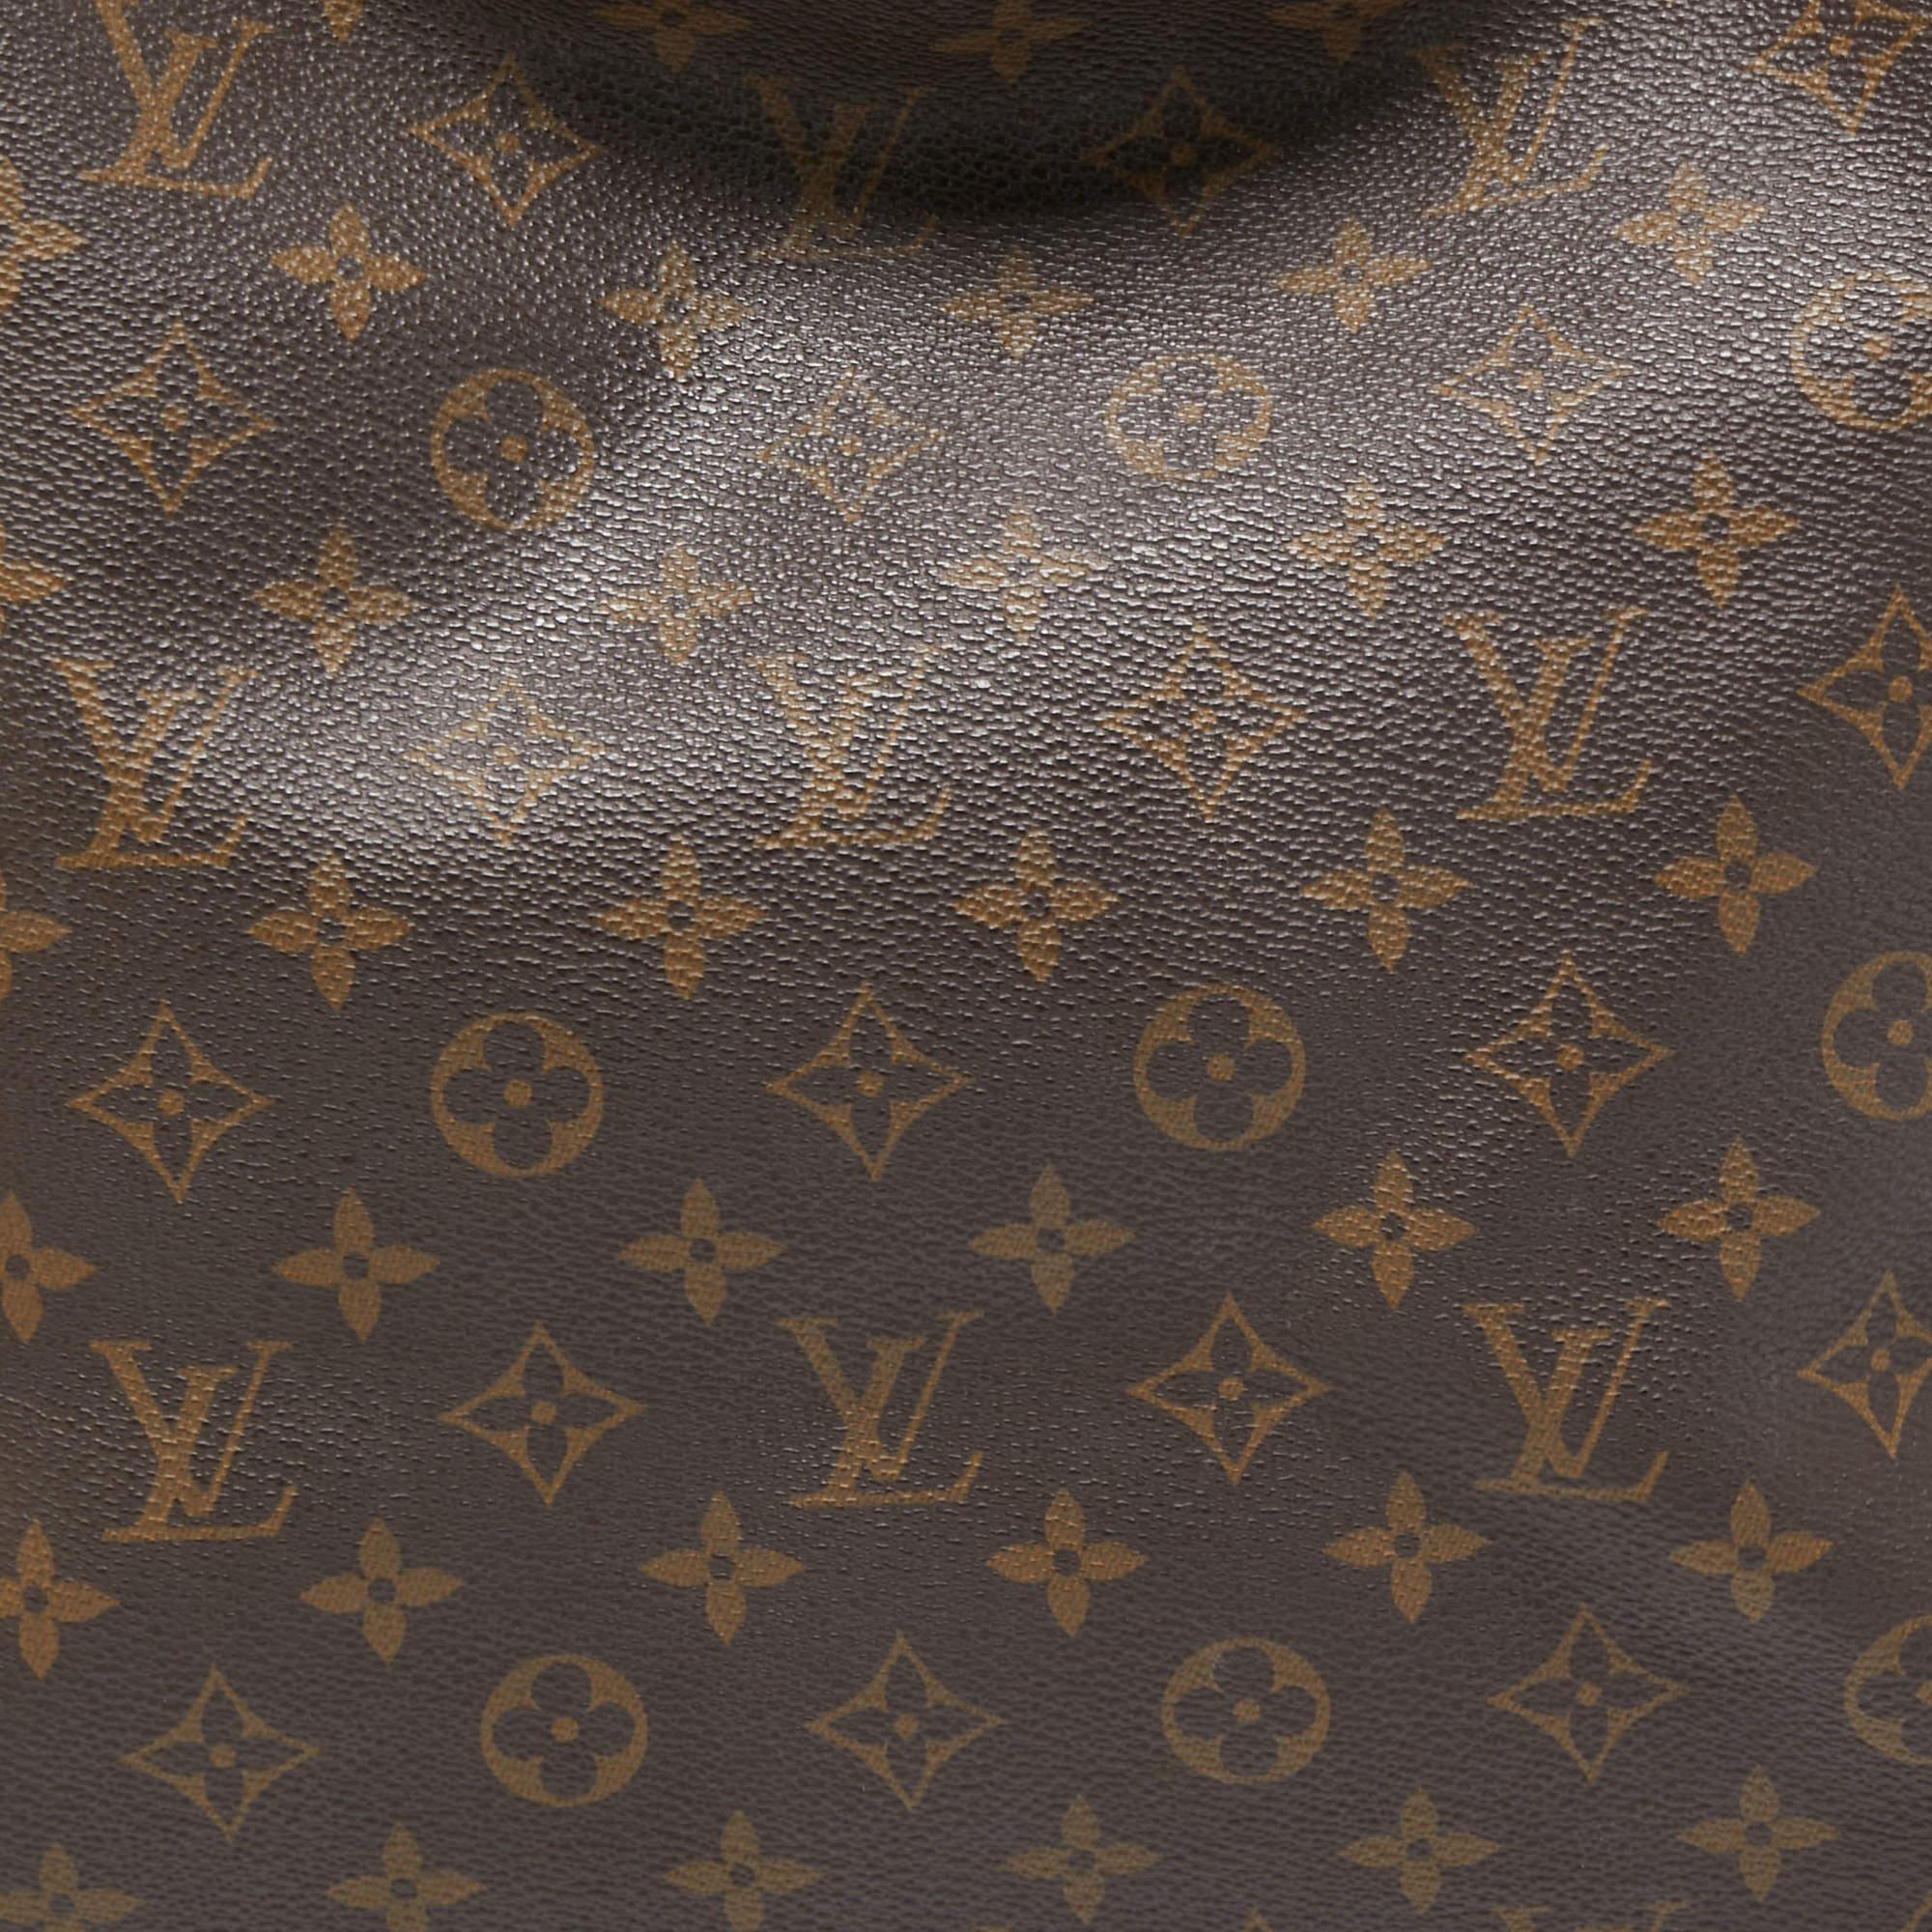 Women's Louis Vuitton Monogram Canvas Artsy MM Bag